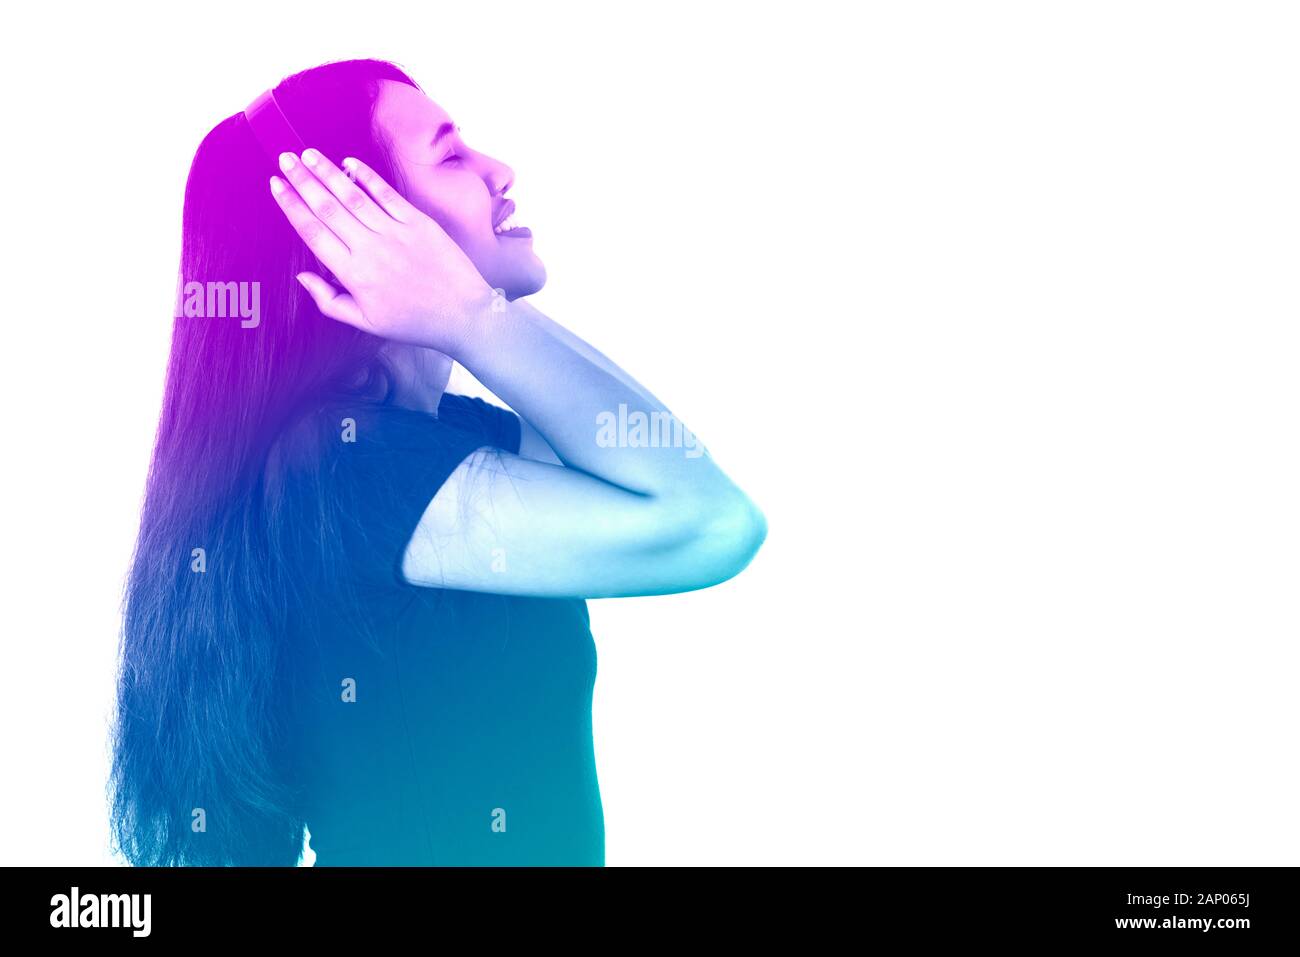 Vue latérale d'une jeune fille asiatique diverse écoutant de la musique sur un casque avec filtre à gradient duotone rétro - femme de style de vie hispanique, profitant de la technologie audio isolée sur fond blanc Banque D'Images